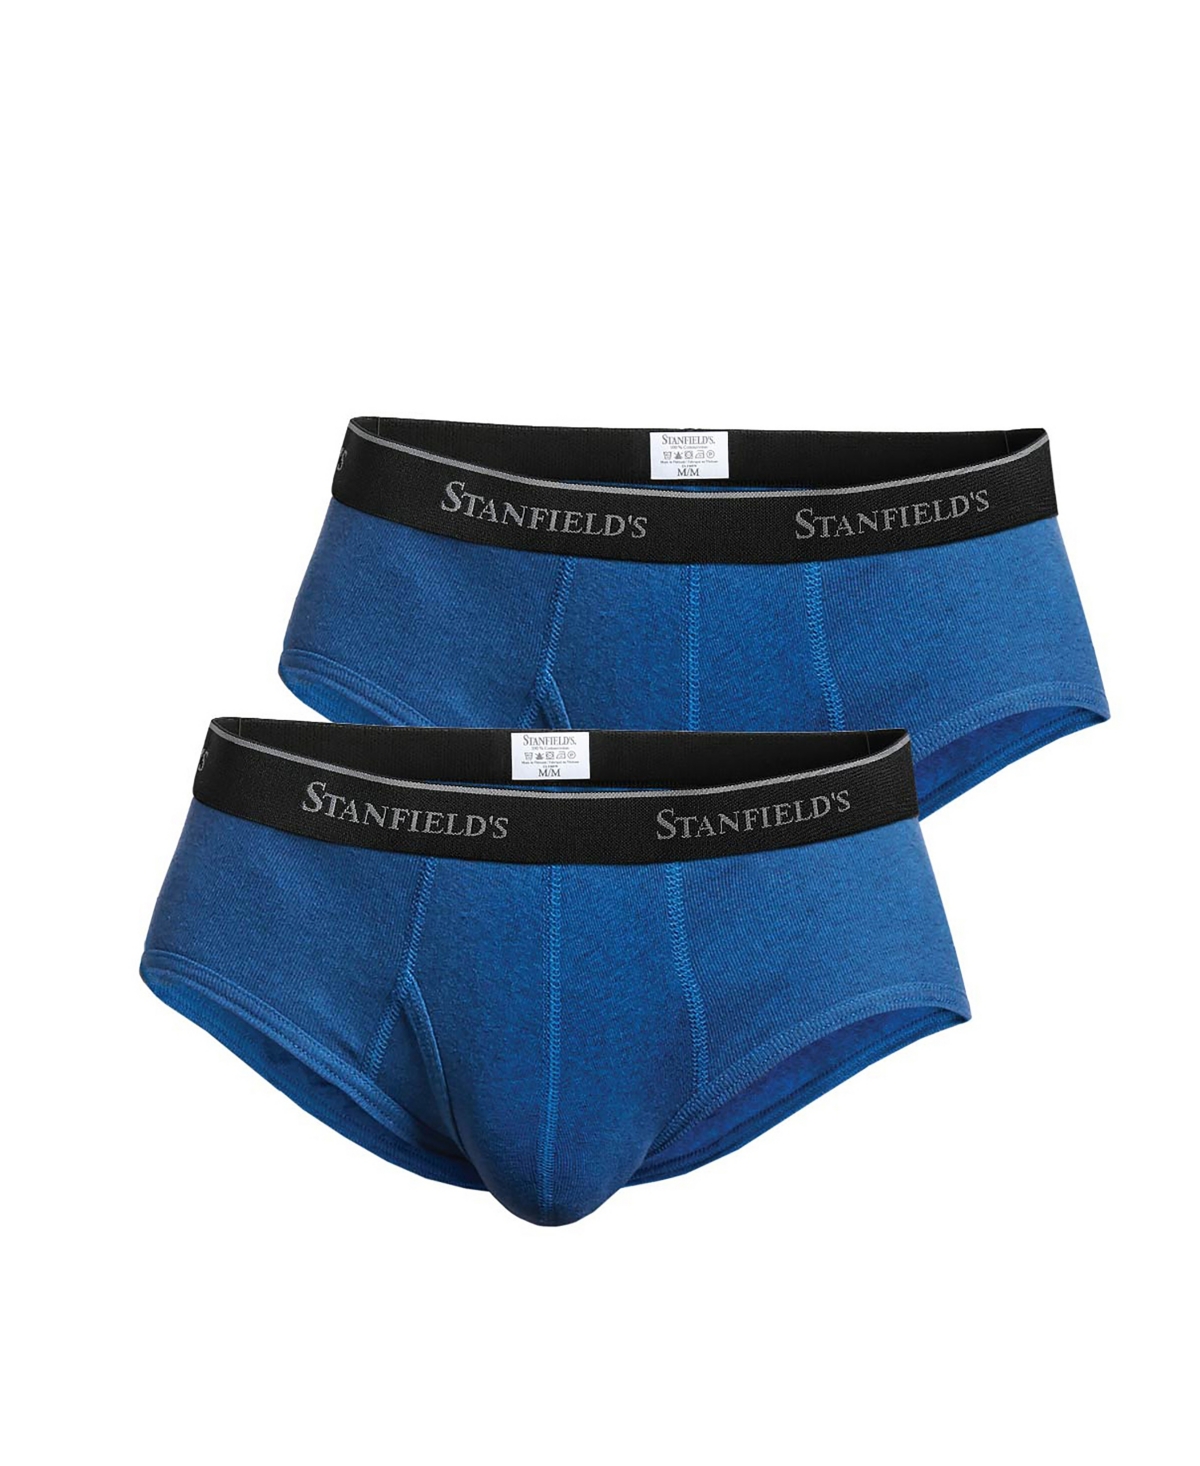 Men's Premium Modern Fit Brief Underwear, Pack of 2 - Yale Blue Heather